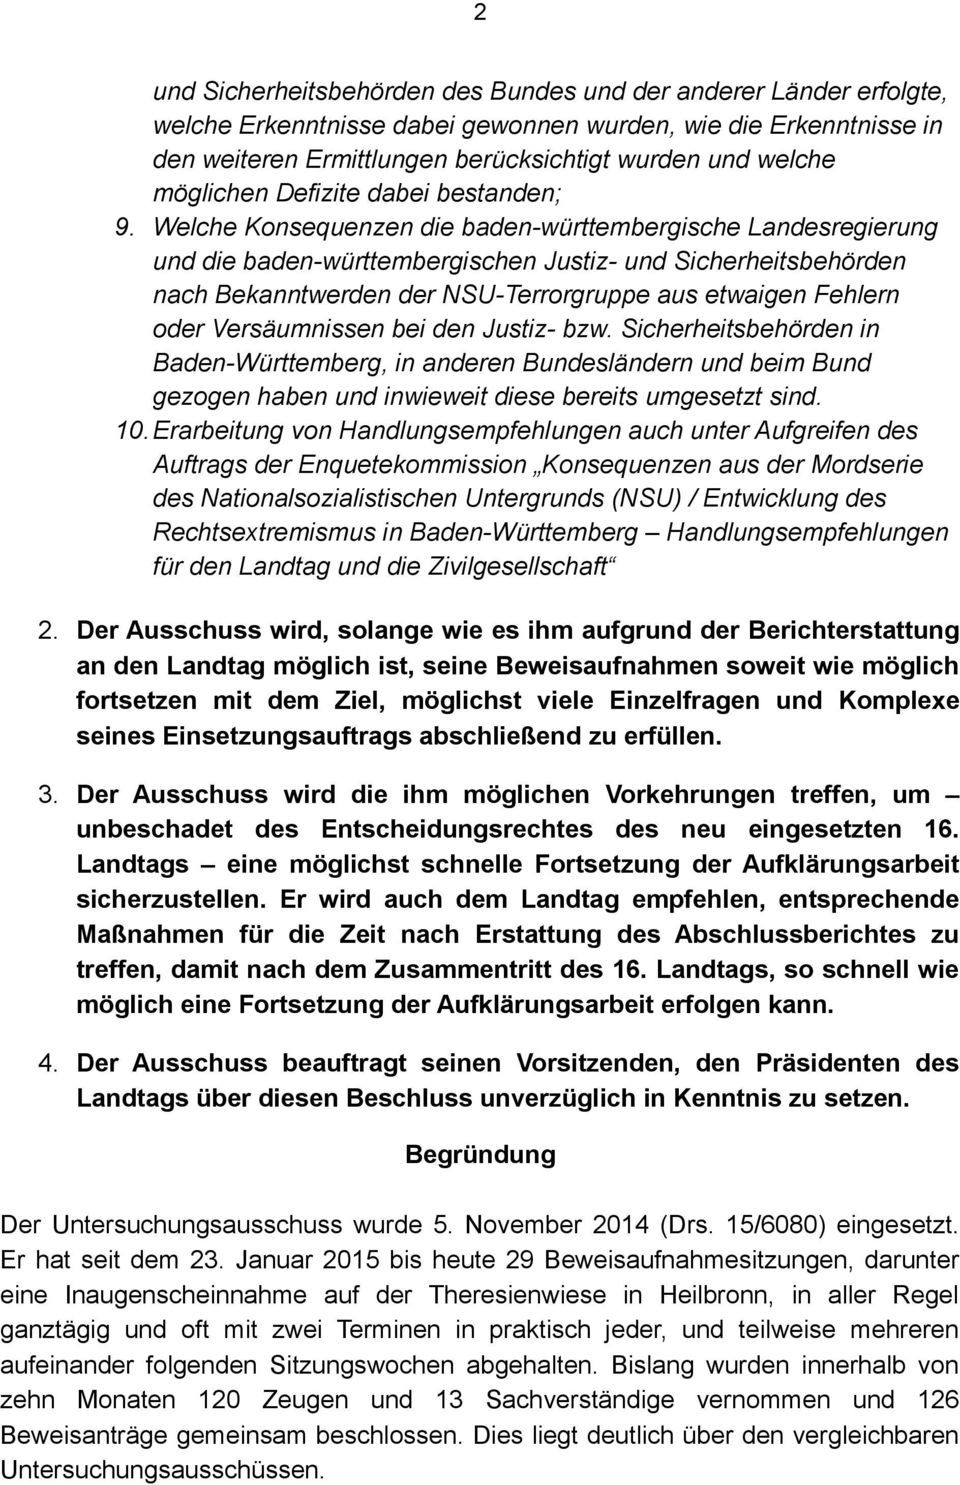 Welche Konsequenzen die baden-württembergische Landesregierung und die baden-württembergischen Justiz- und Sicherheitsbehörden nach Bekanntwerden der NSU-Terrorgruppe aus etwaigen Fehlern oder